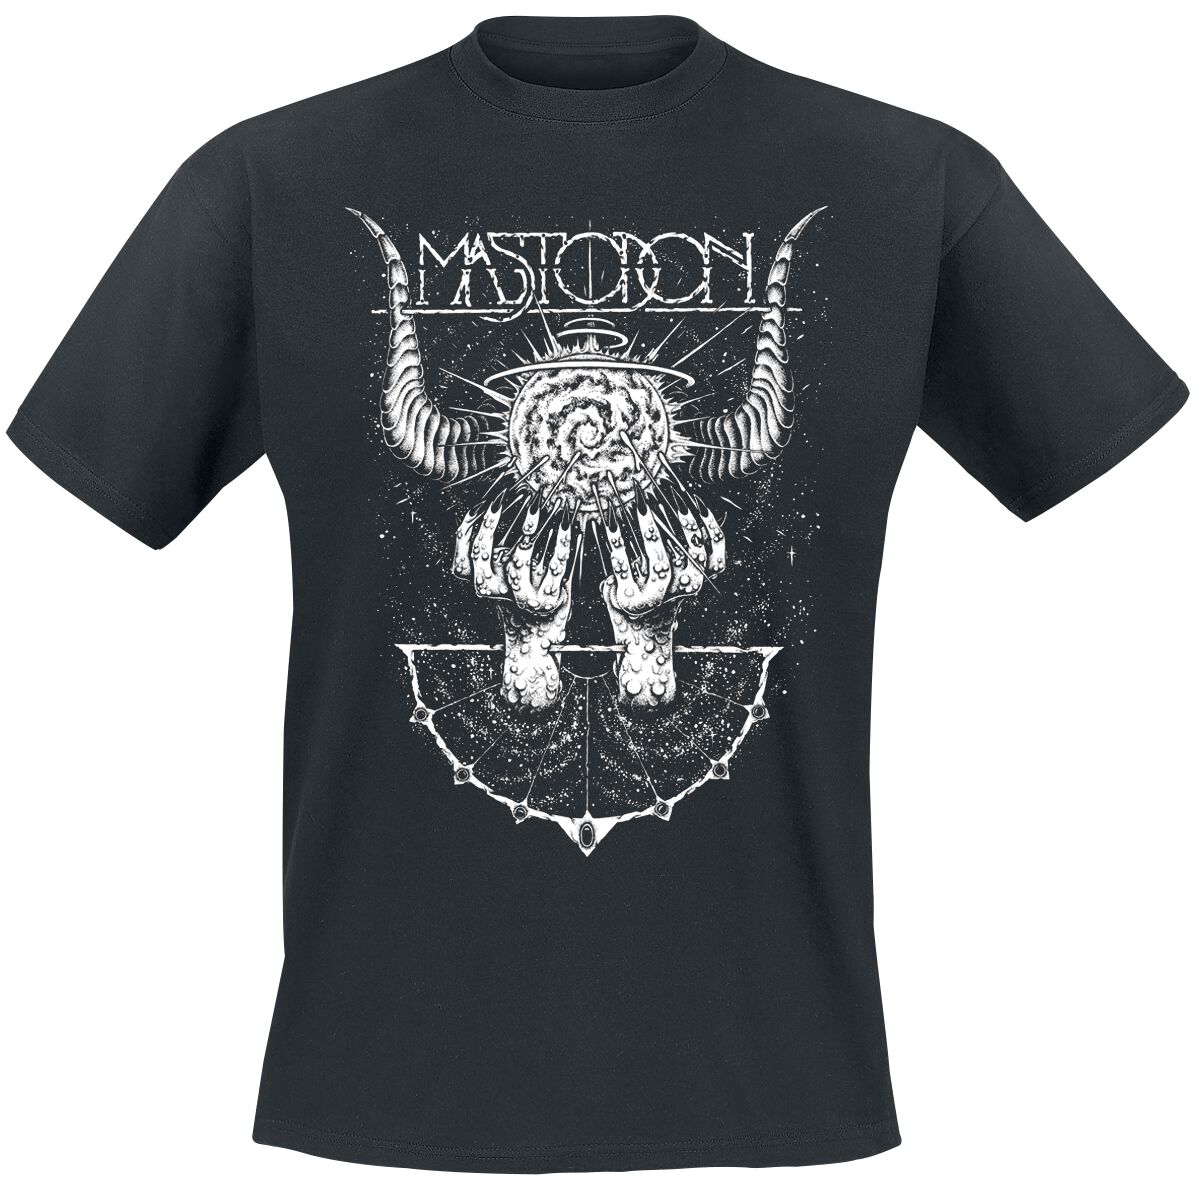 Mastodon T-Shirt - Horned Cosmos - S bis 4XL - für Männer - Größe S - schwarz  - Lizenziertes Merchandise!